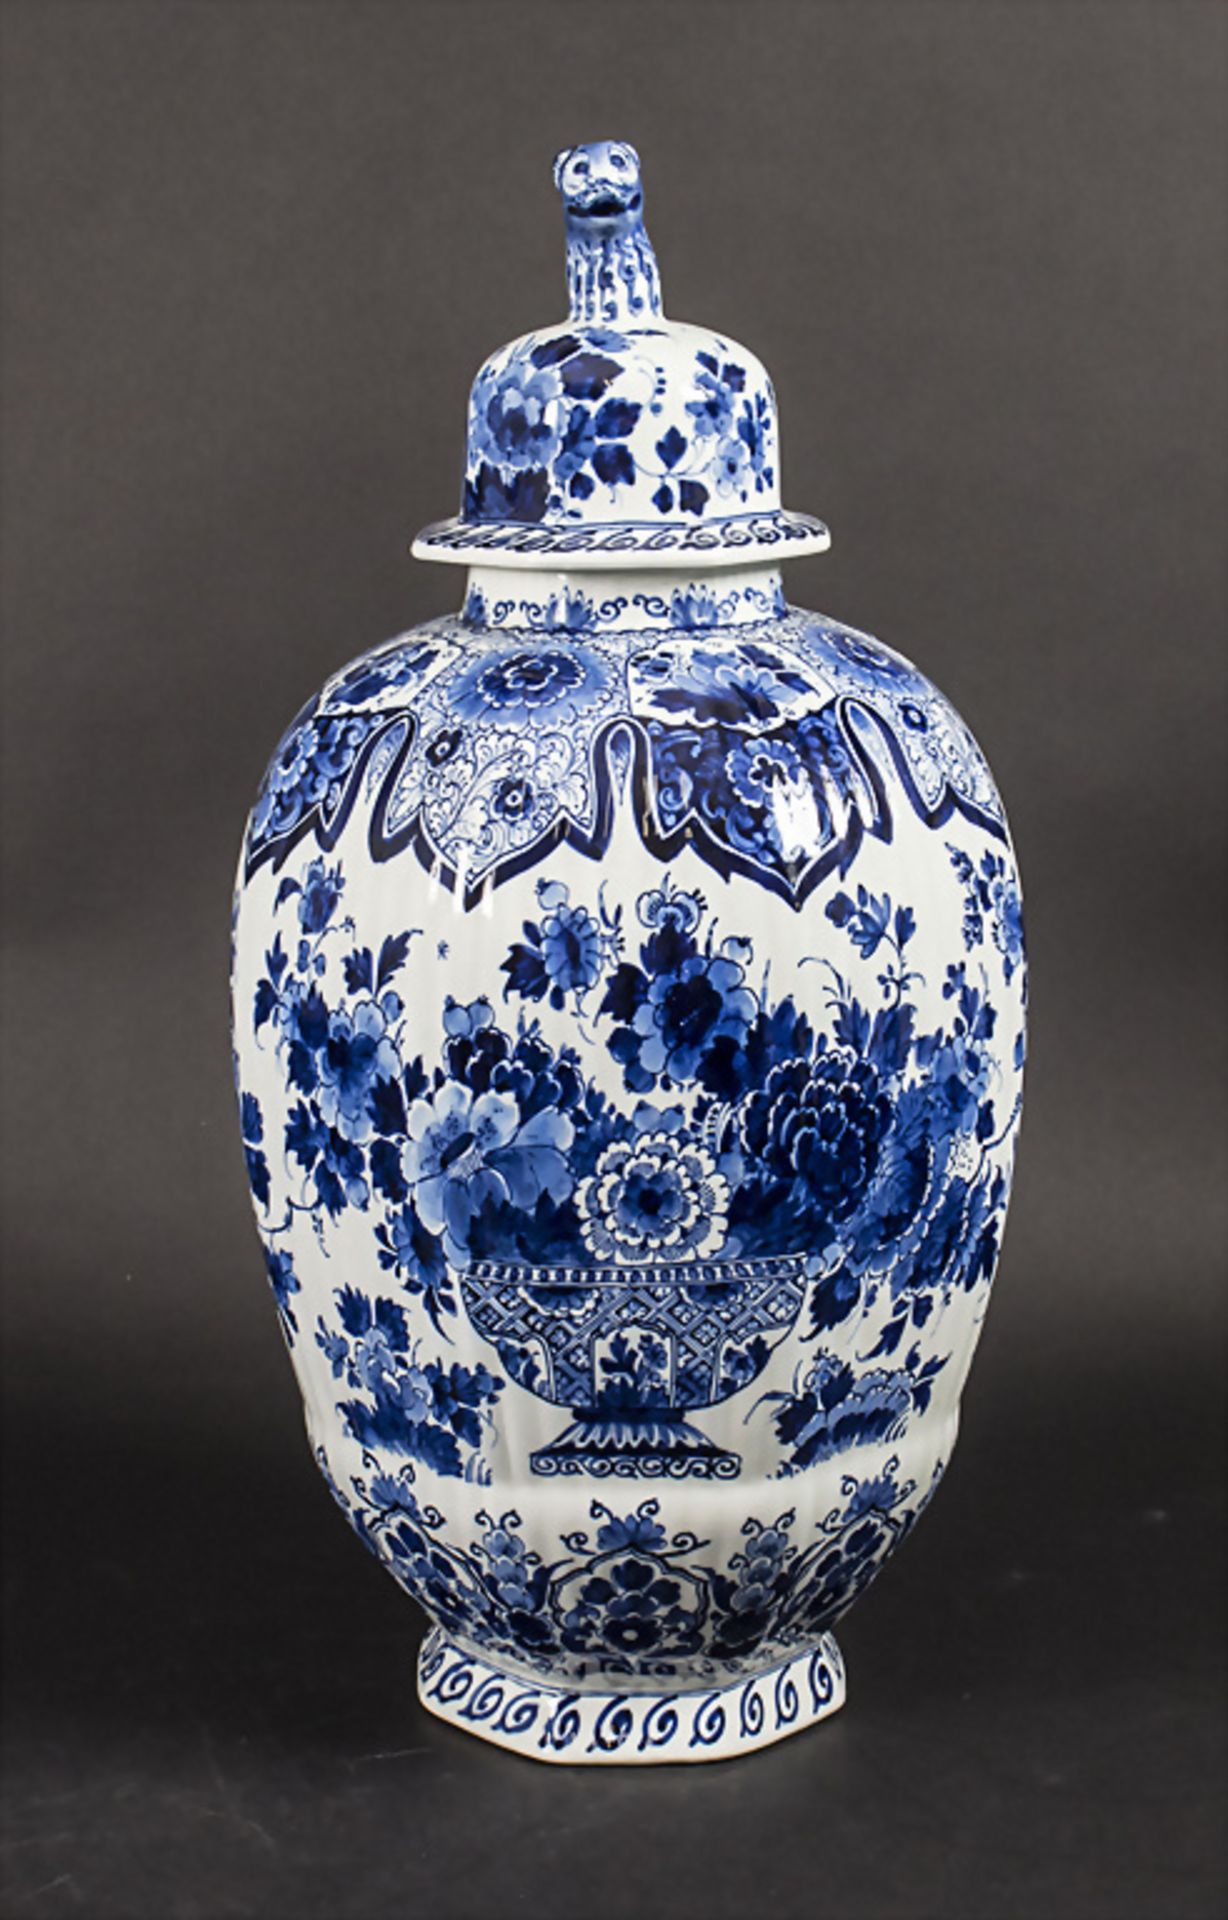 Große Deckelvase / A large lidded ceramic vase, De Porceleyne Fles, Delft